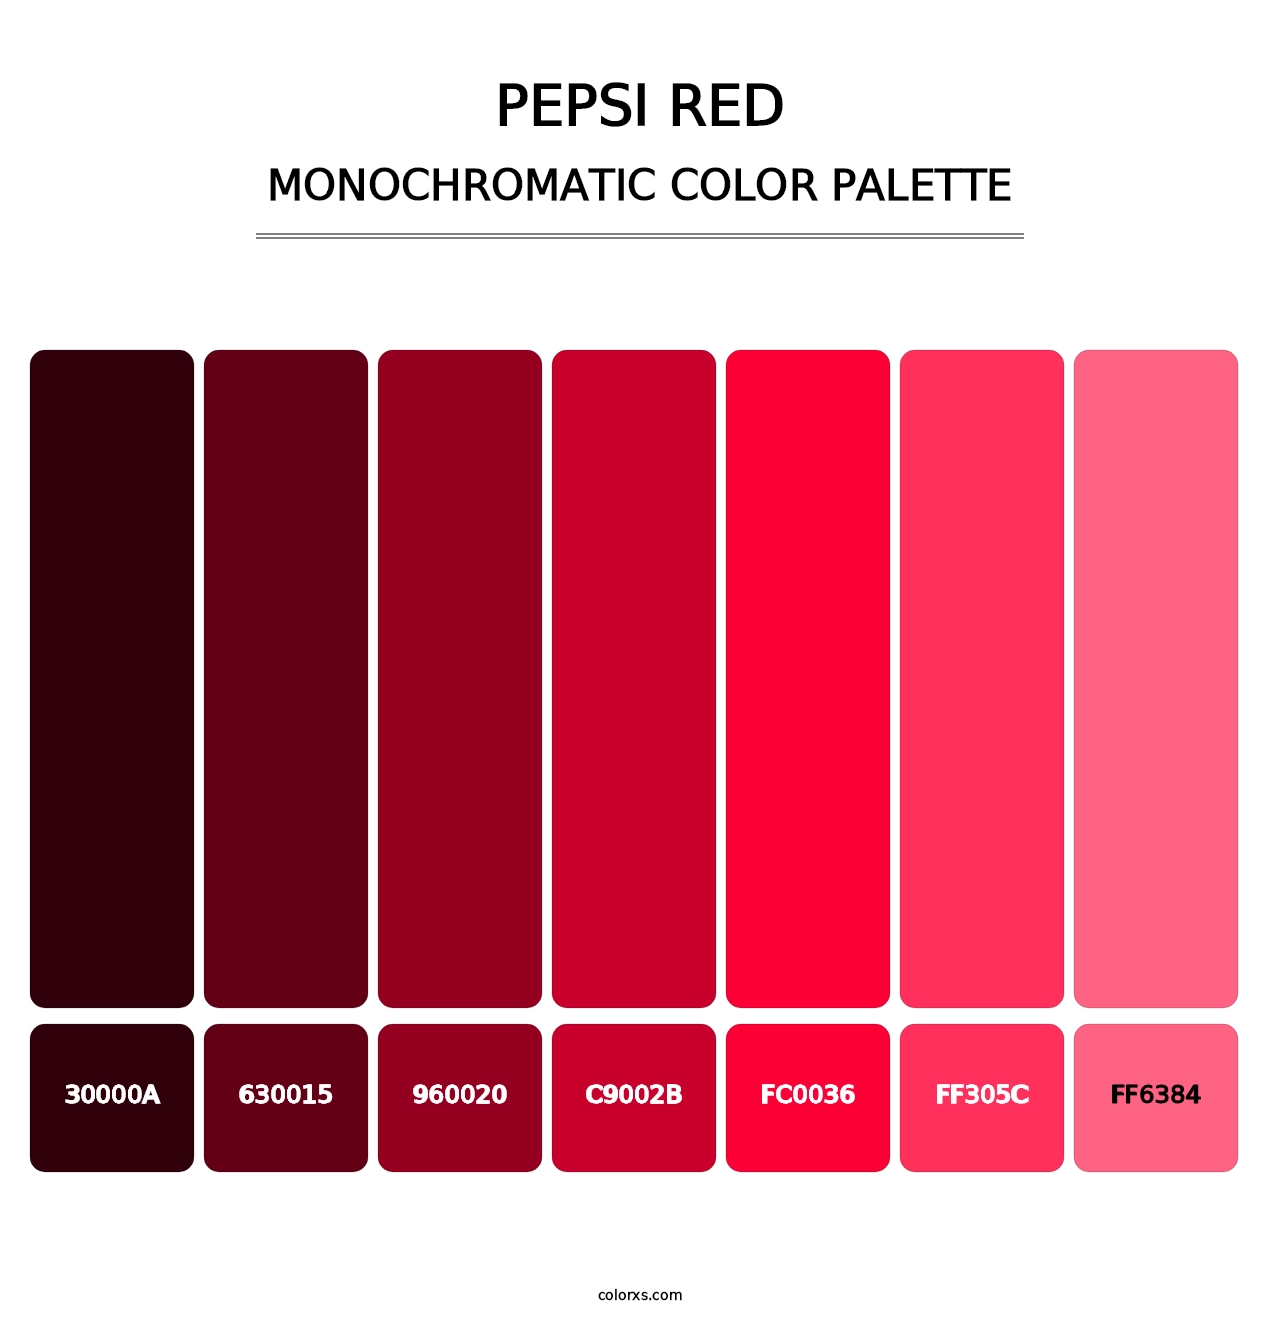 Pepsi Red - Monochromatic Color Palette